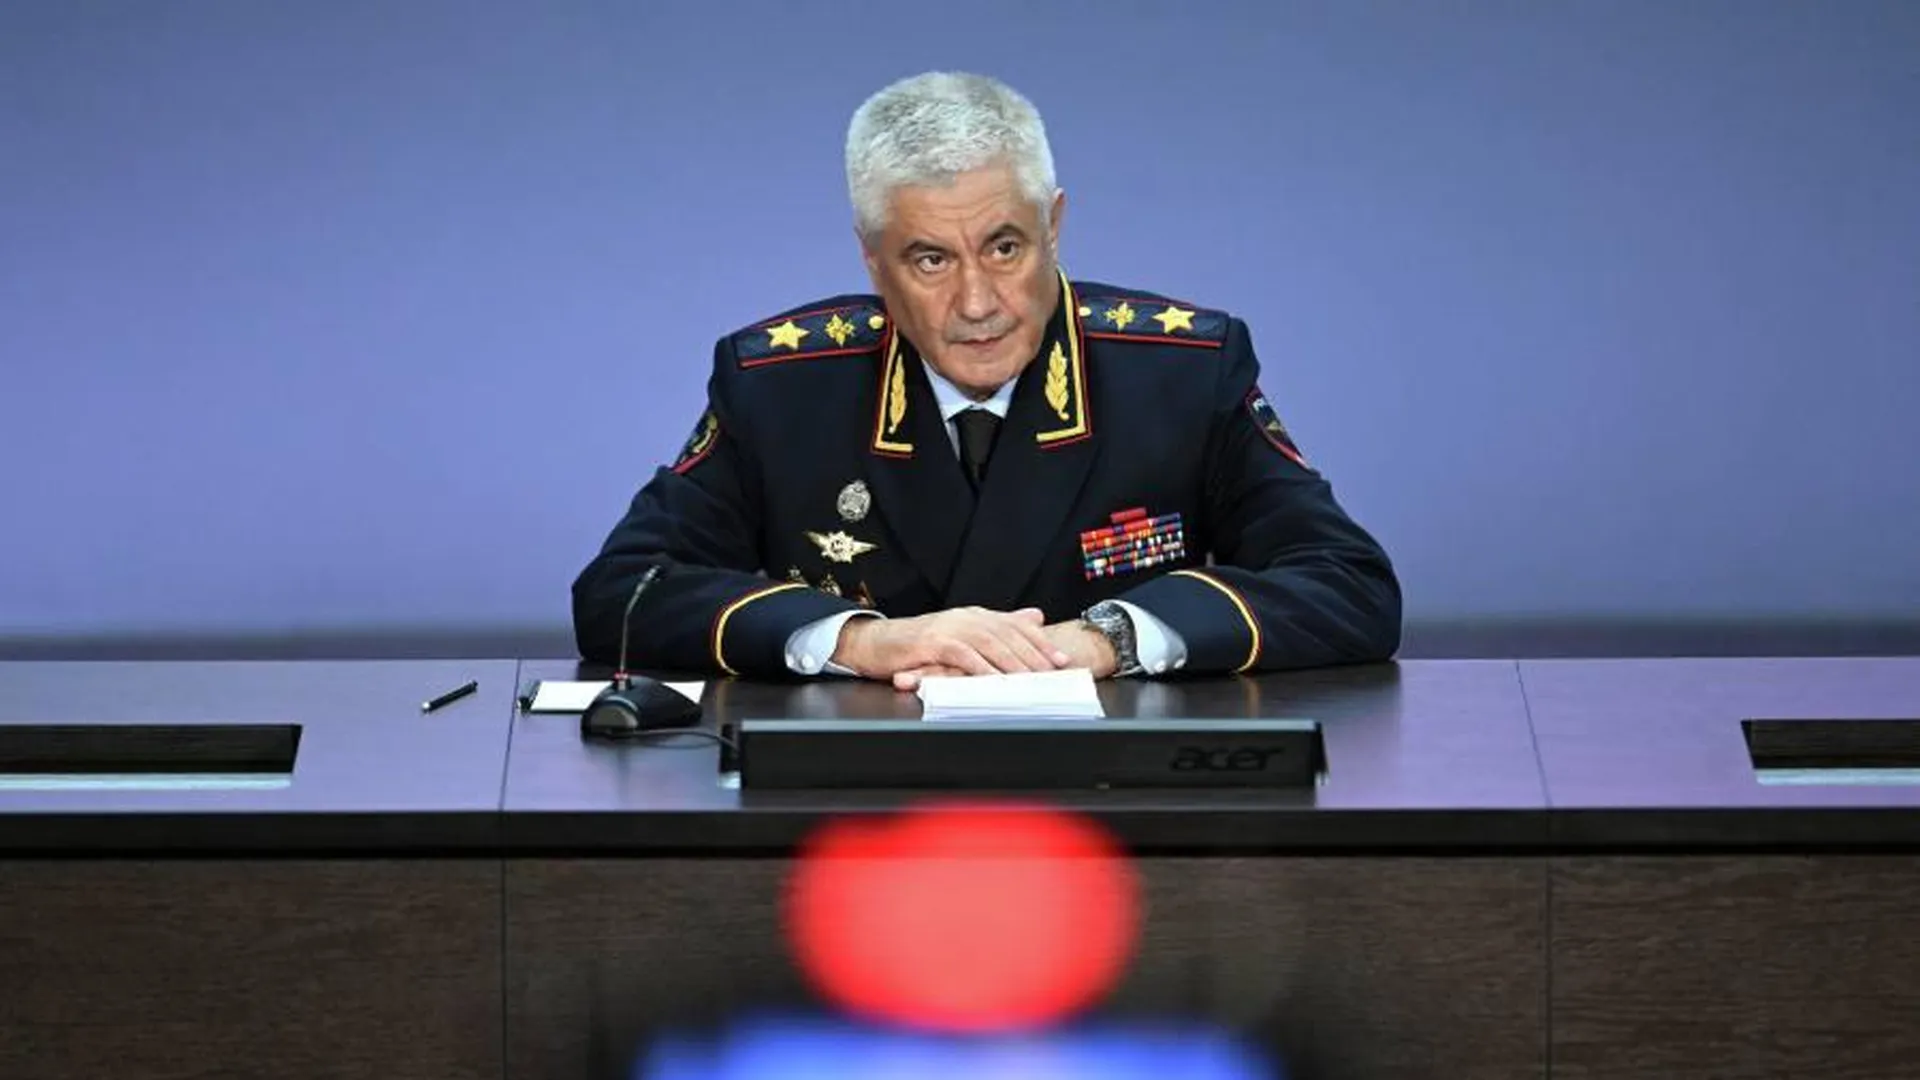 Глава российского МВД привел статистику раскрываемости преступлений в стране